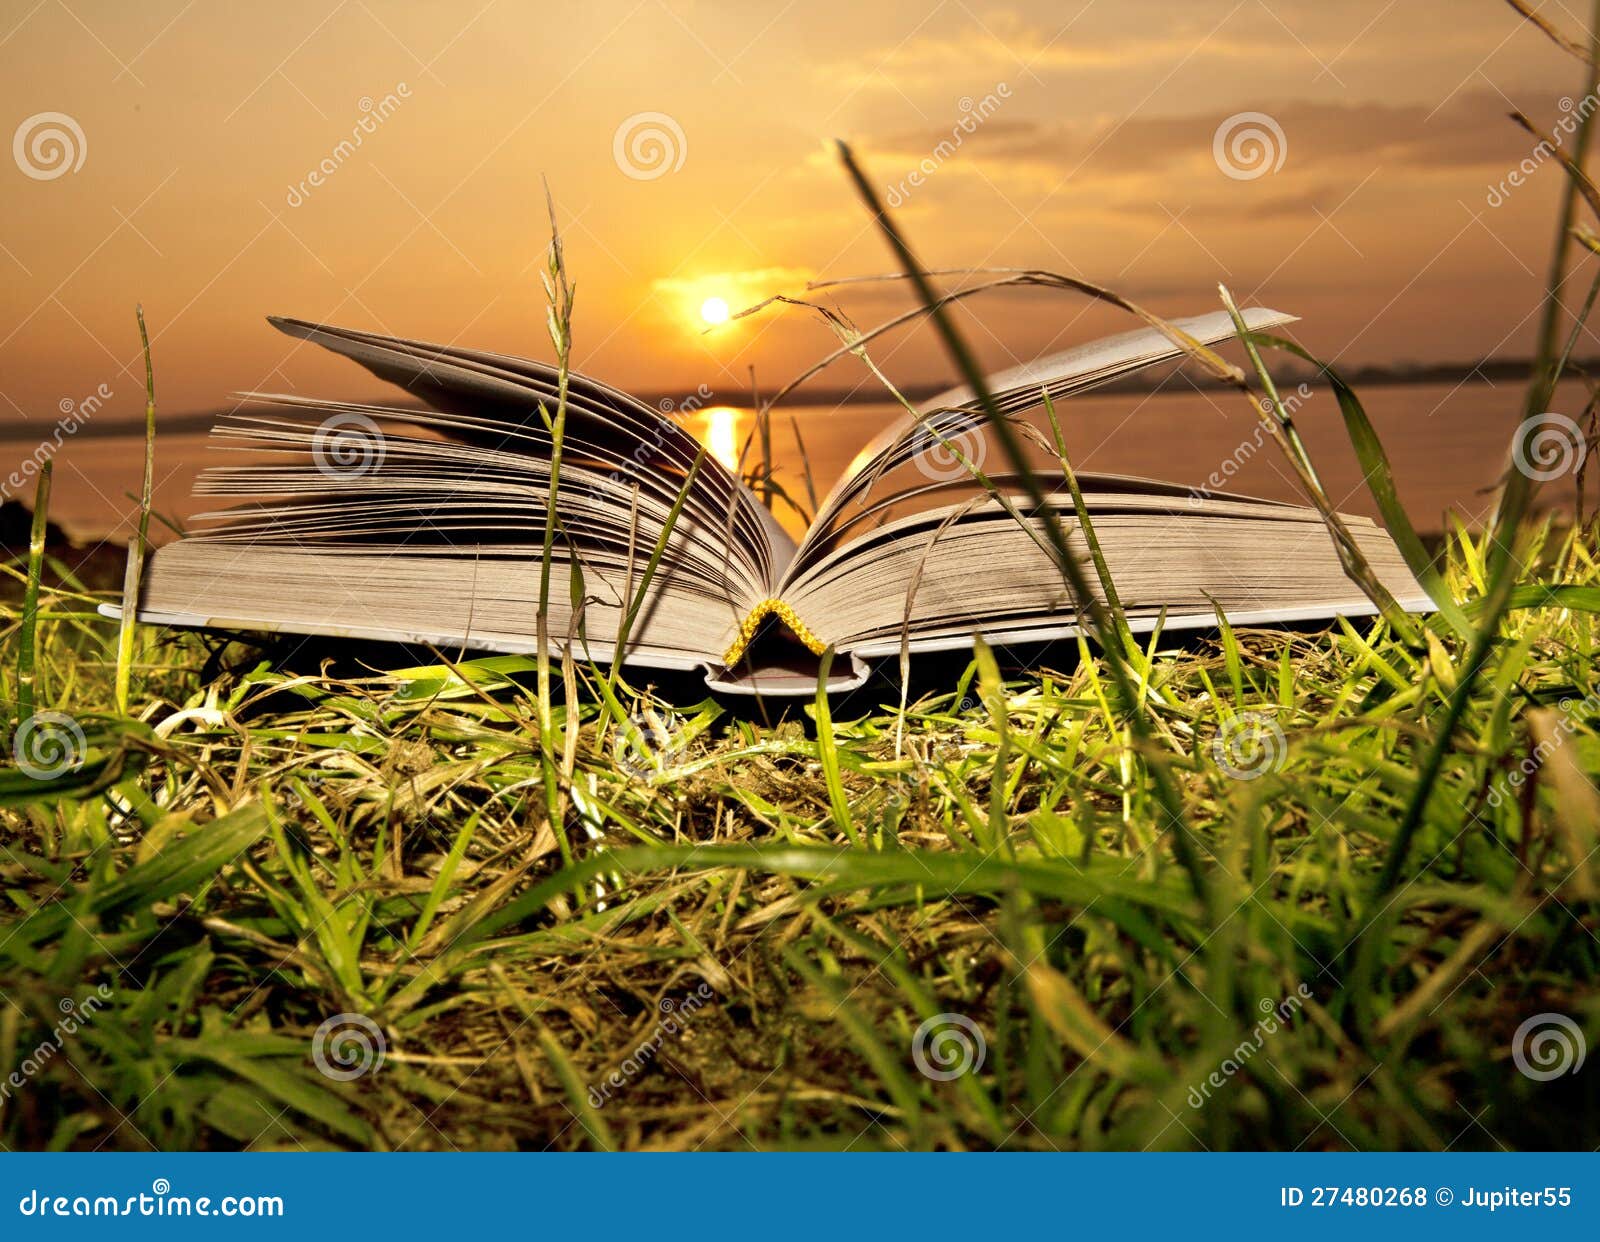 Книга солнечный свет. Книга солнце. Солнце с книжкой. Раскрытая книга с солнцем. «Летнее солнце на книжных страницах».